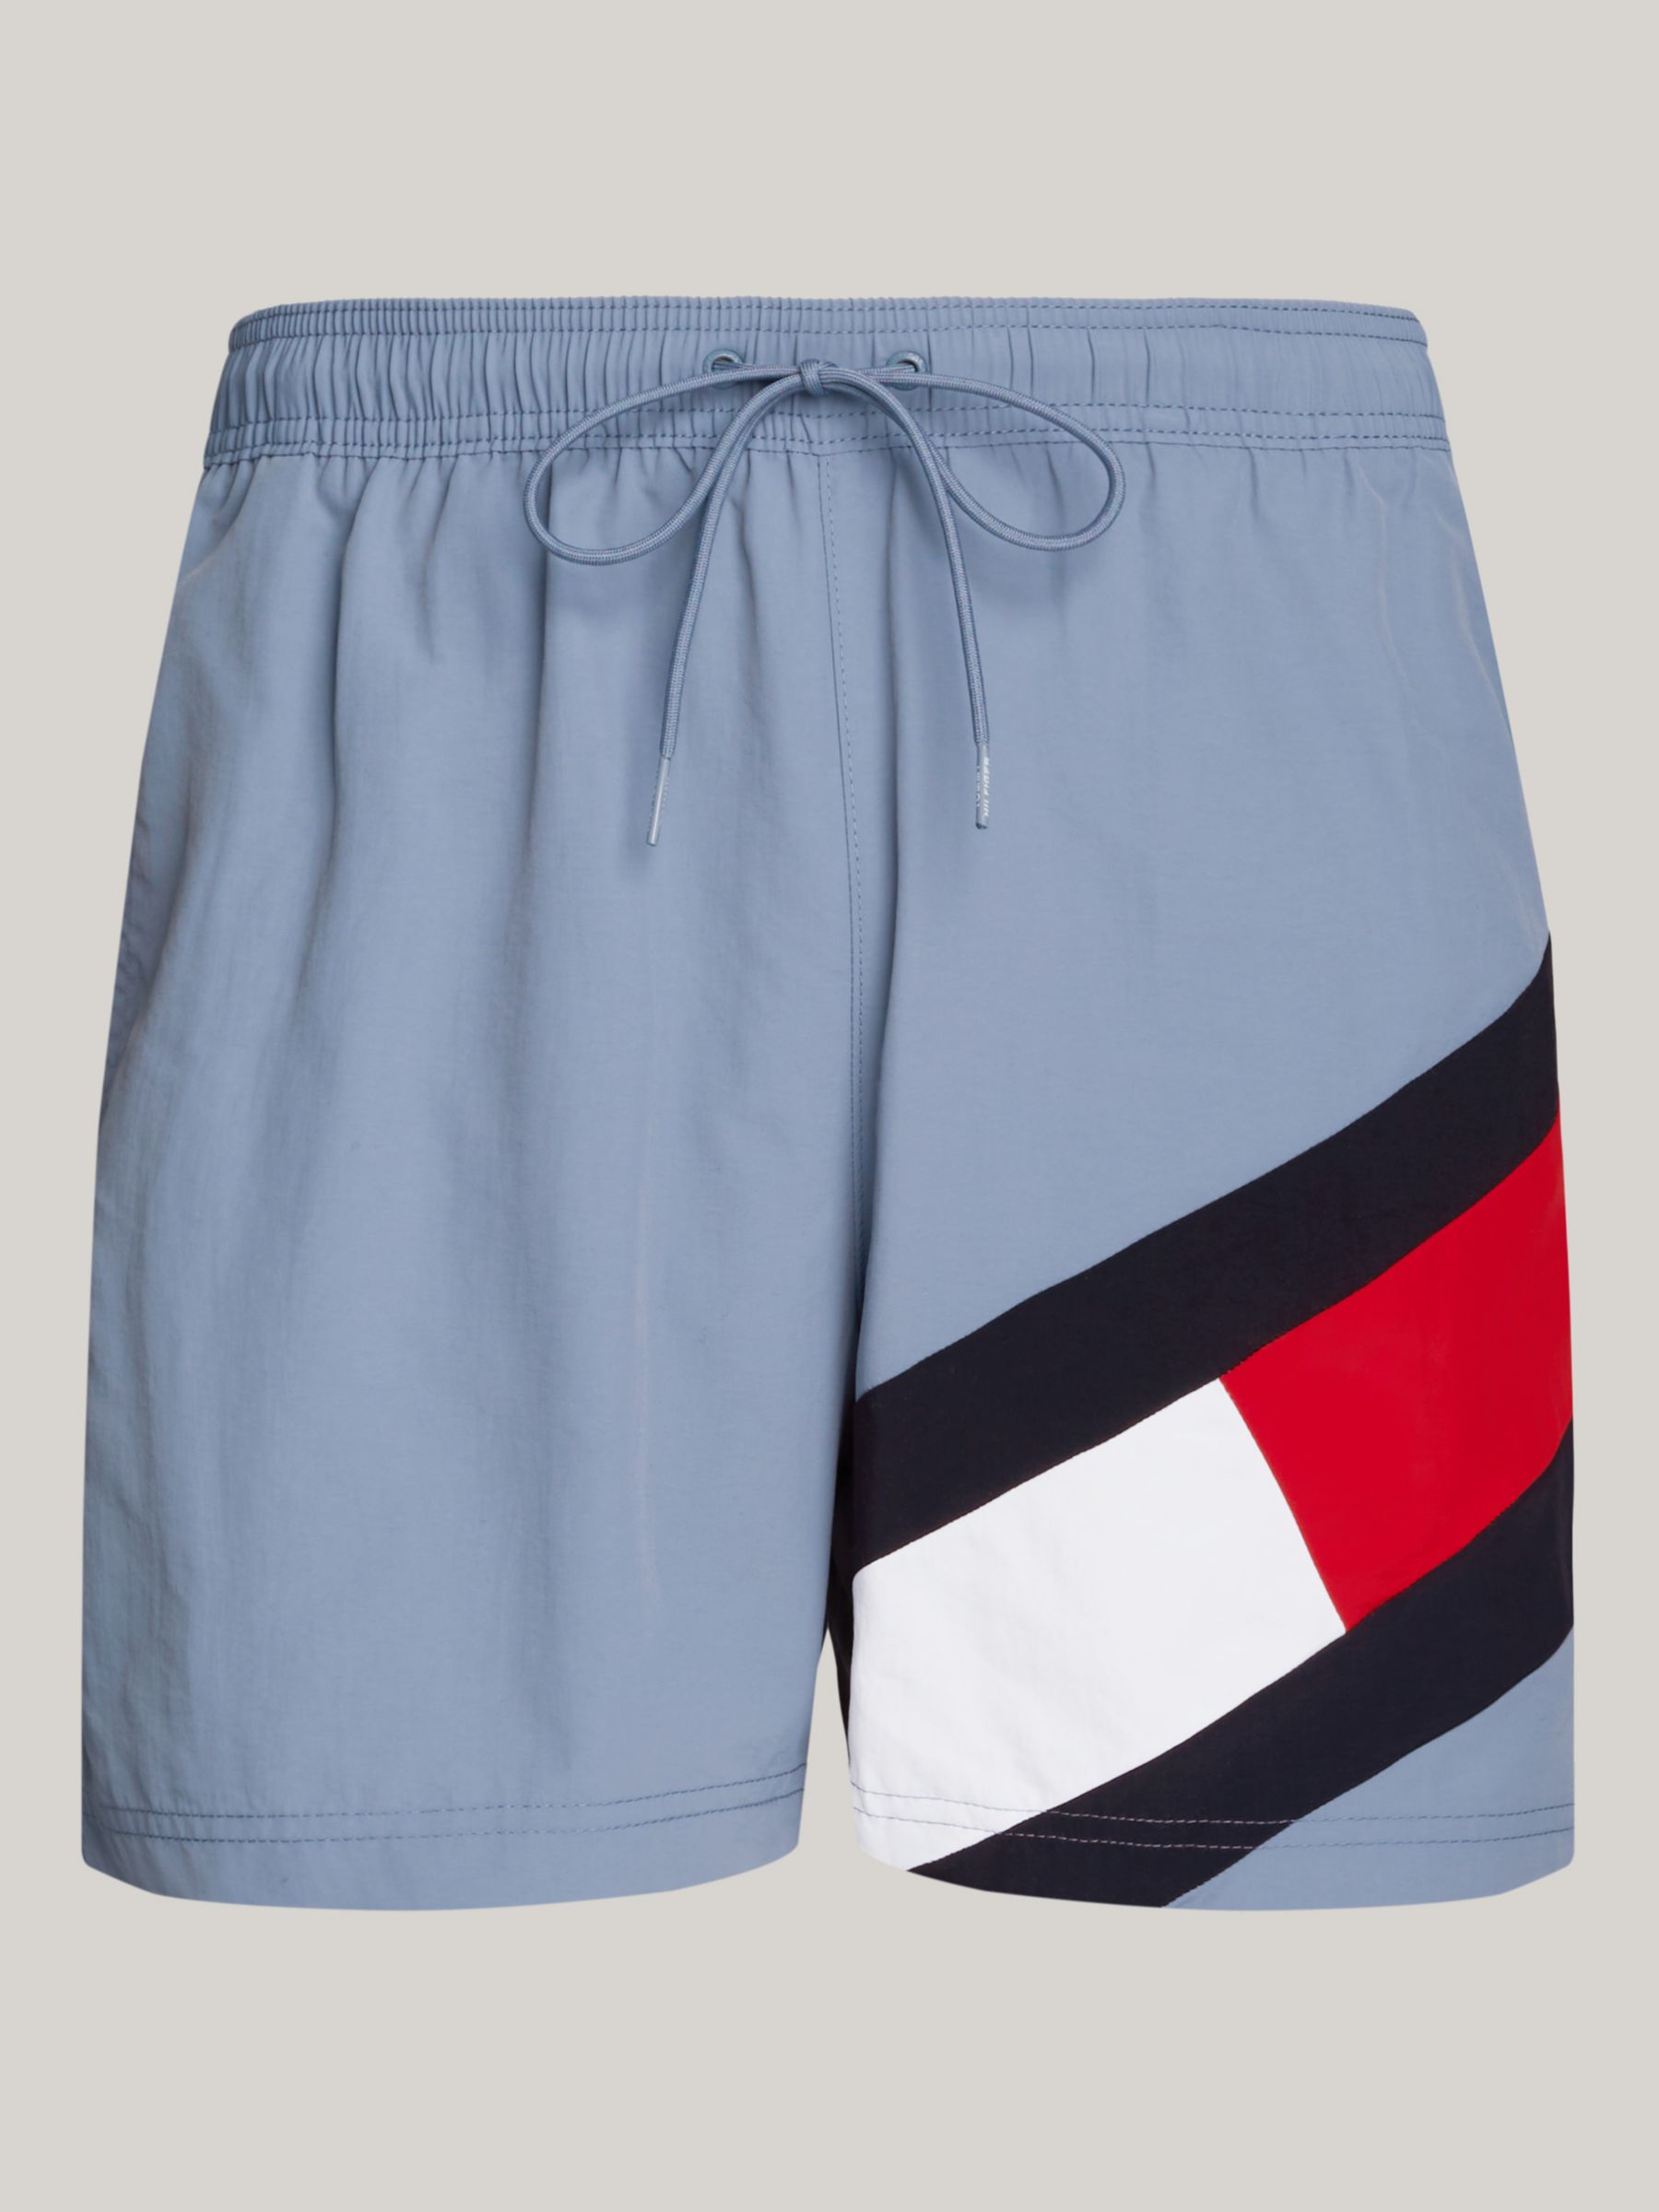 Tommy Hilfiger Iconic Flag Swim Shorts, Blue Coal, L